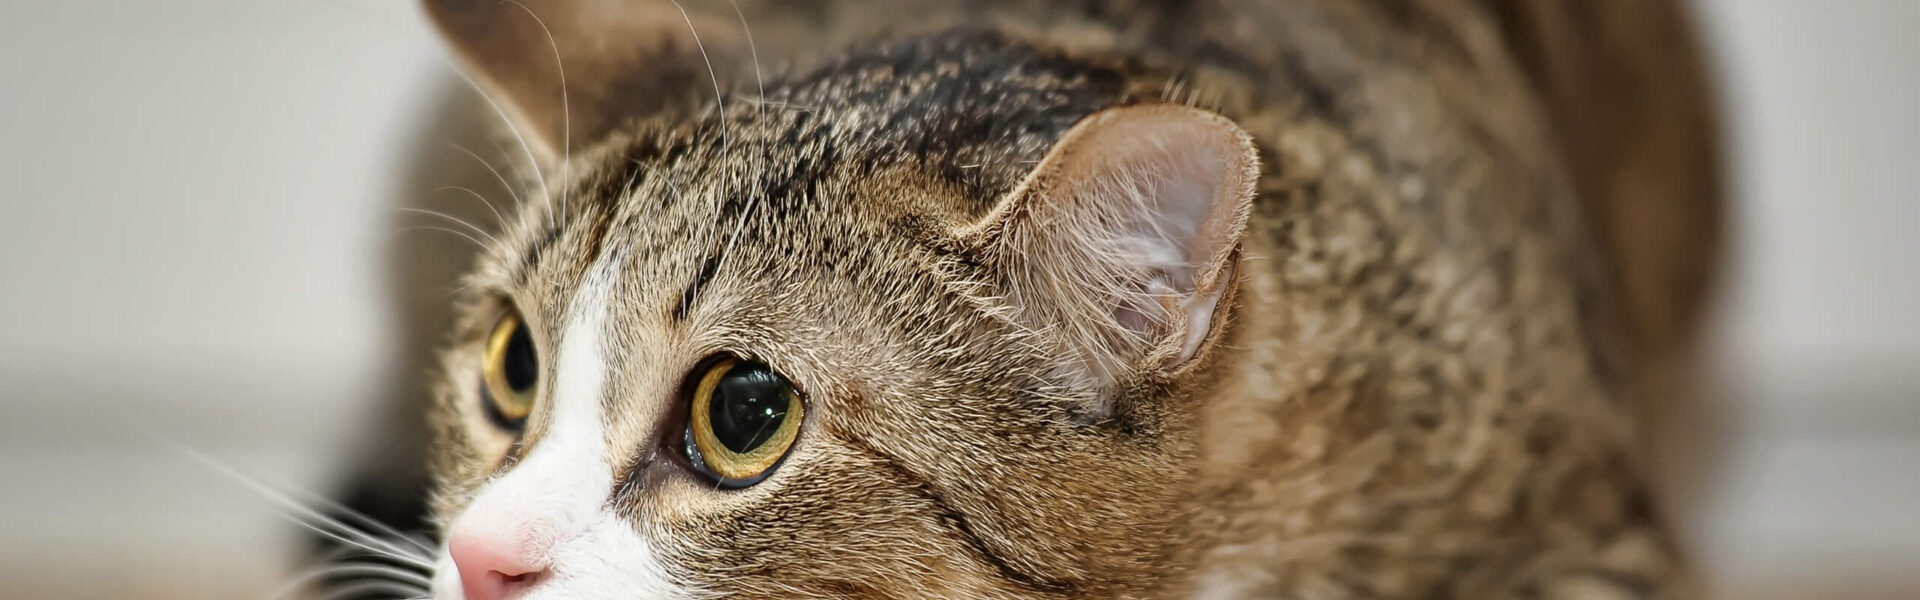 In che modo i gatti nervosi imparano a fidarsi?